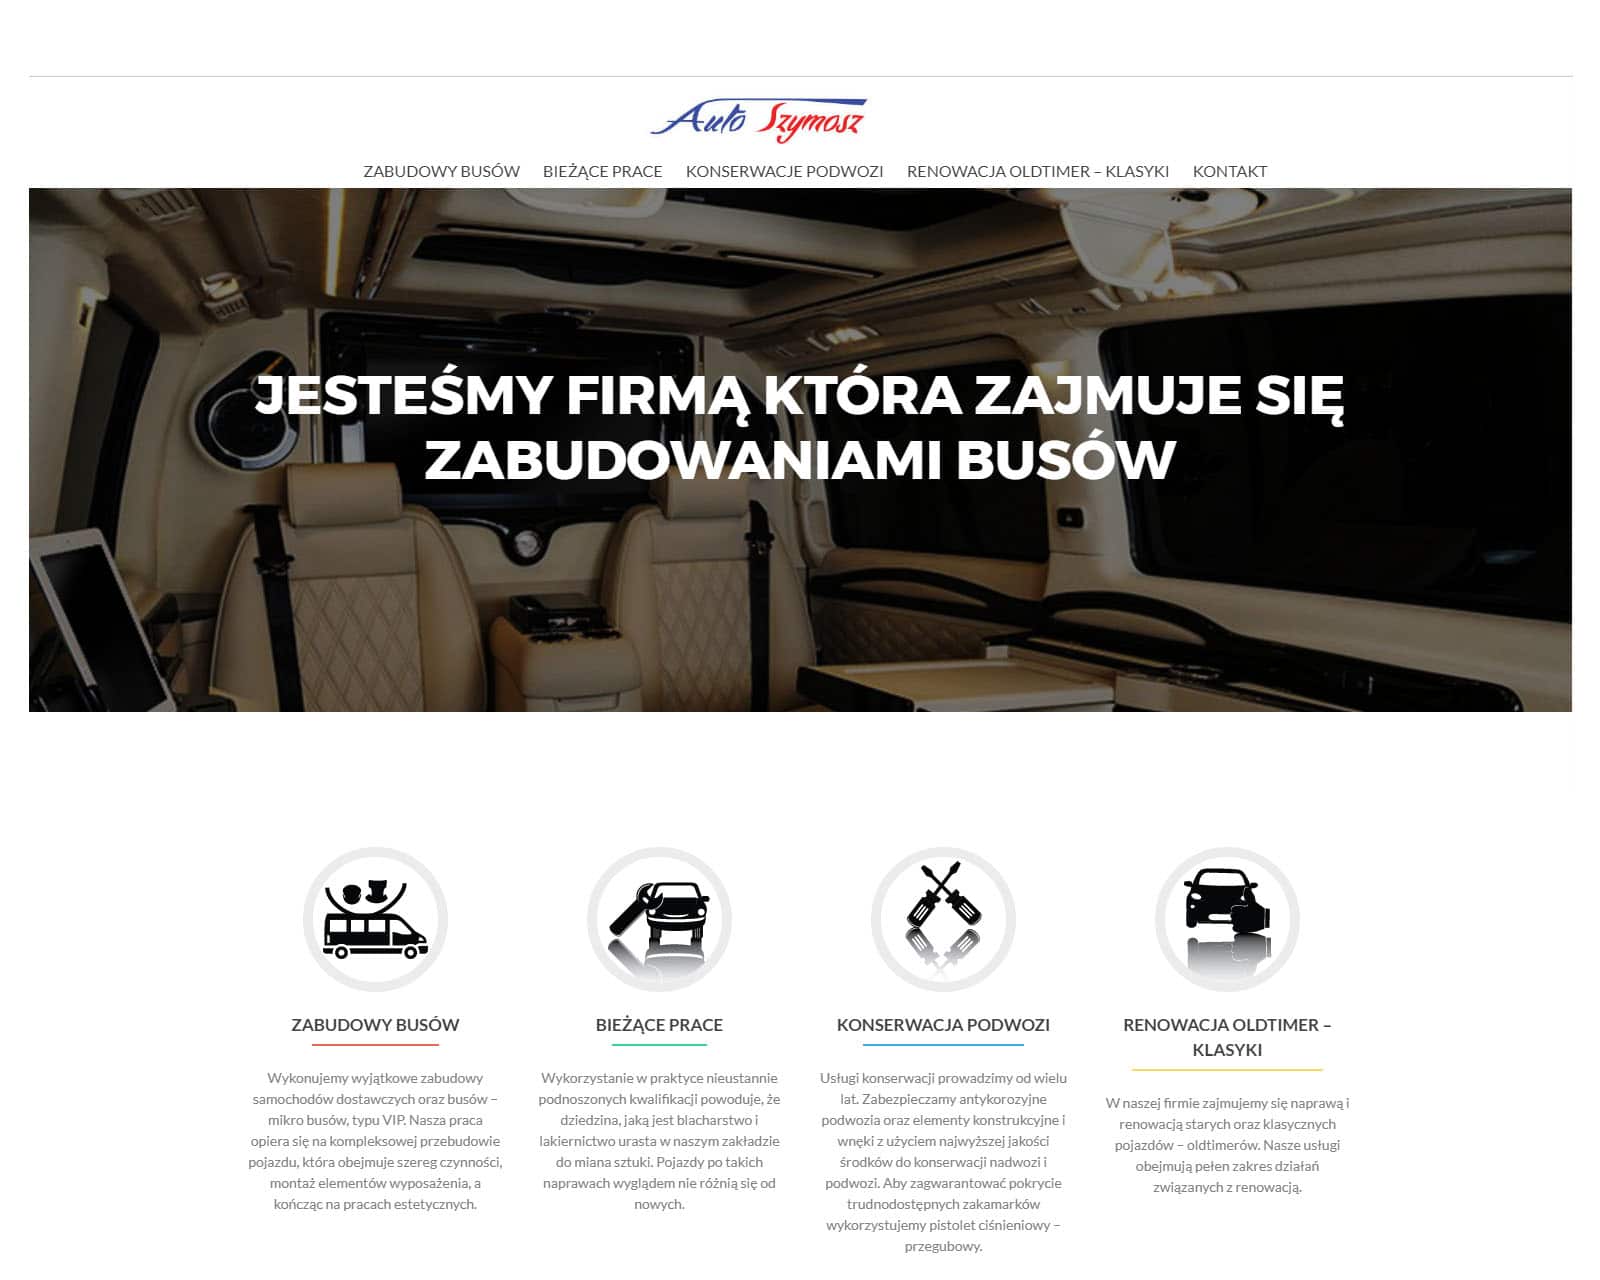 You are currently viewing strona internetowa AutoSzymosz